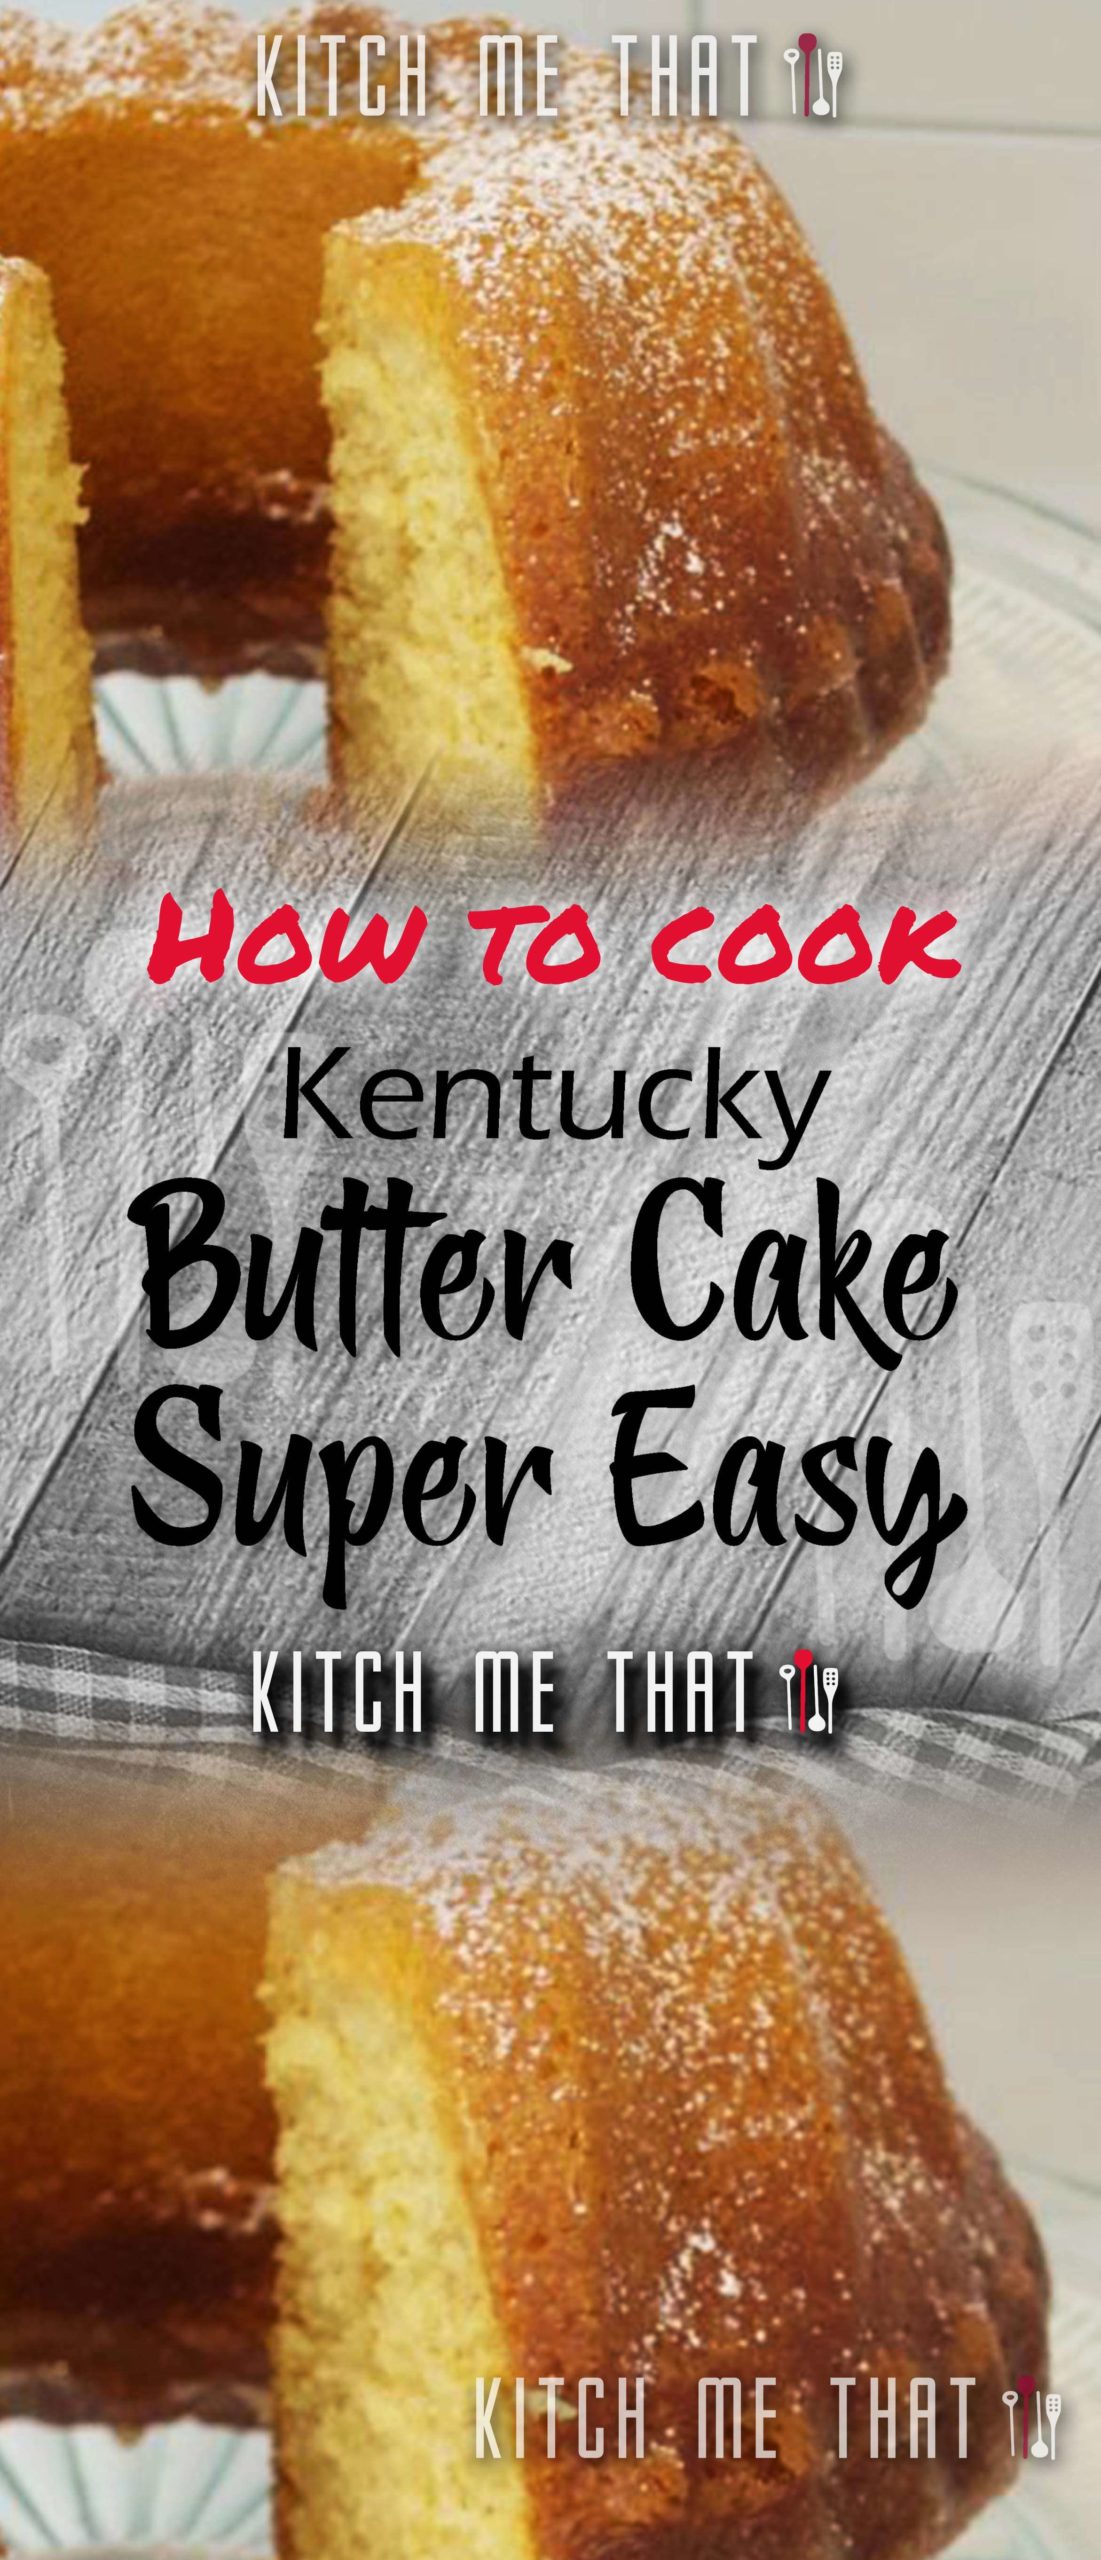 Kentucky Butter Cake